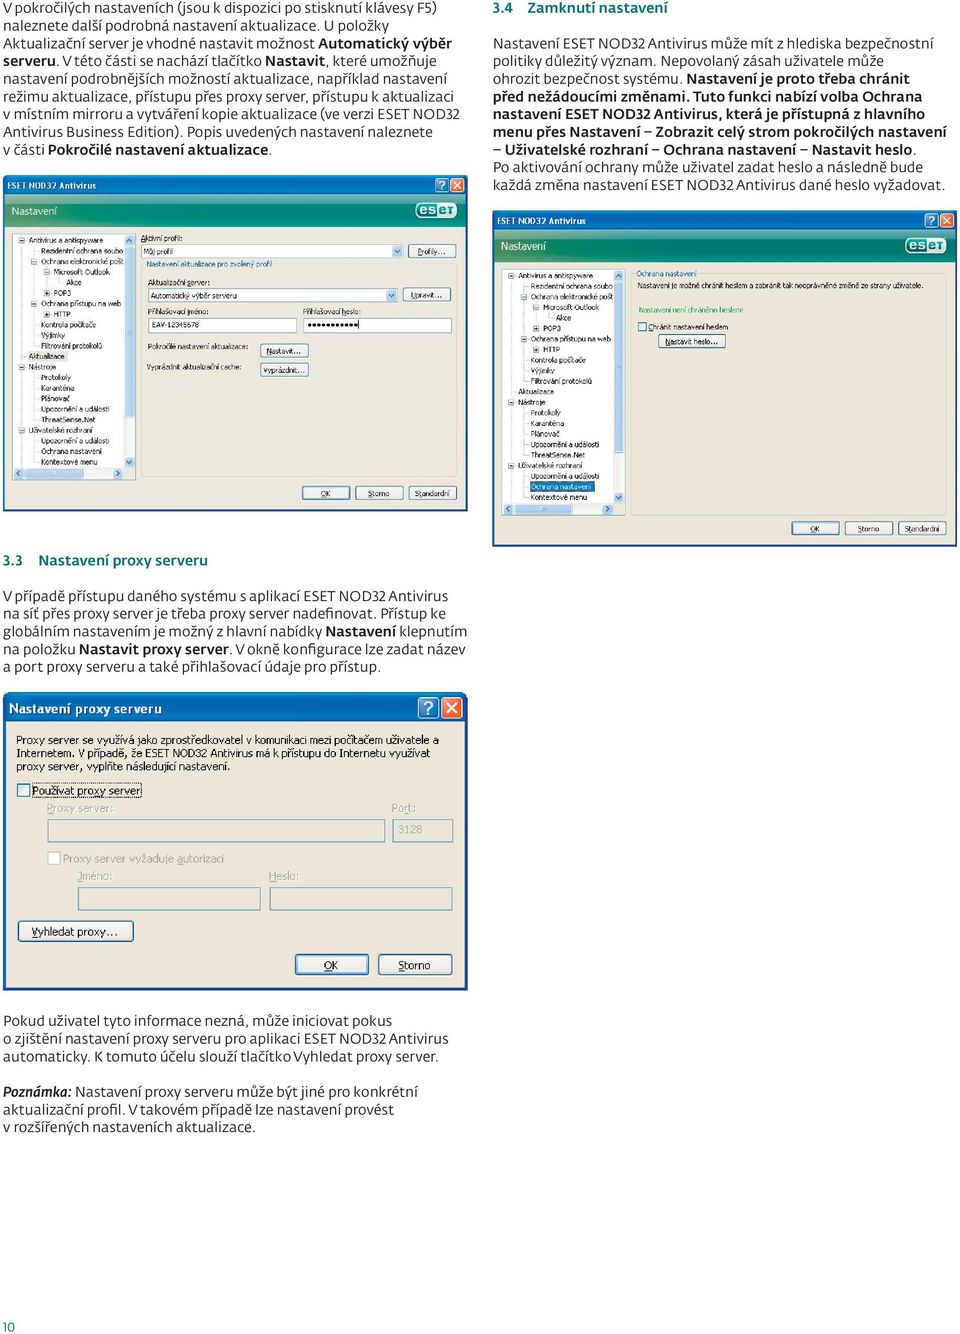 místním mirroru a vytváření kopie aktualizace (ve verzi ESET NOD32 Antivirus Business Edition). Popis uvedených nastavení naleznete v části Pokročilé nastavení aktualizace. 3.